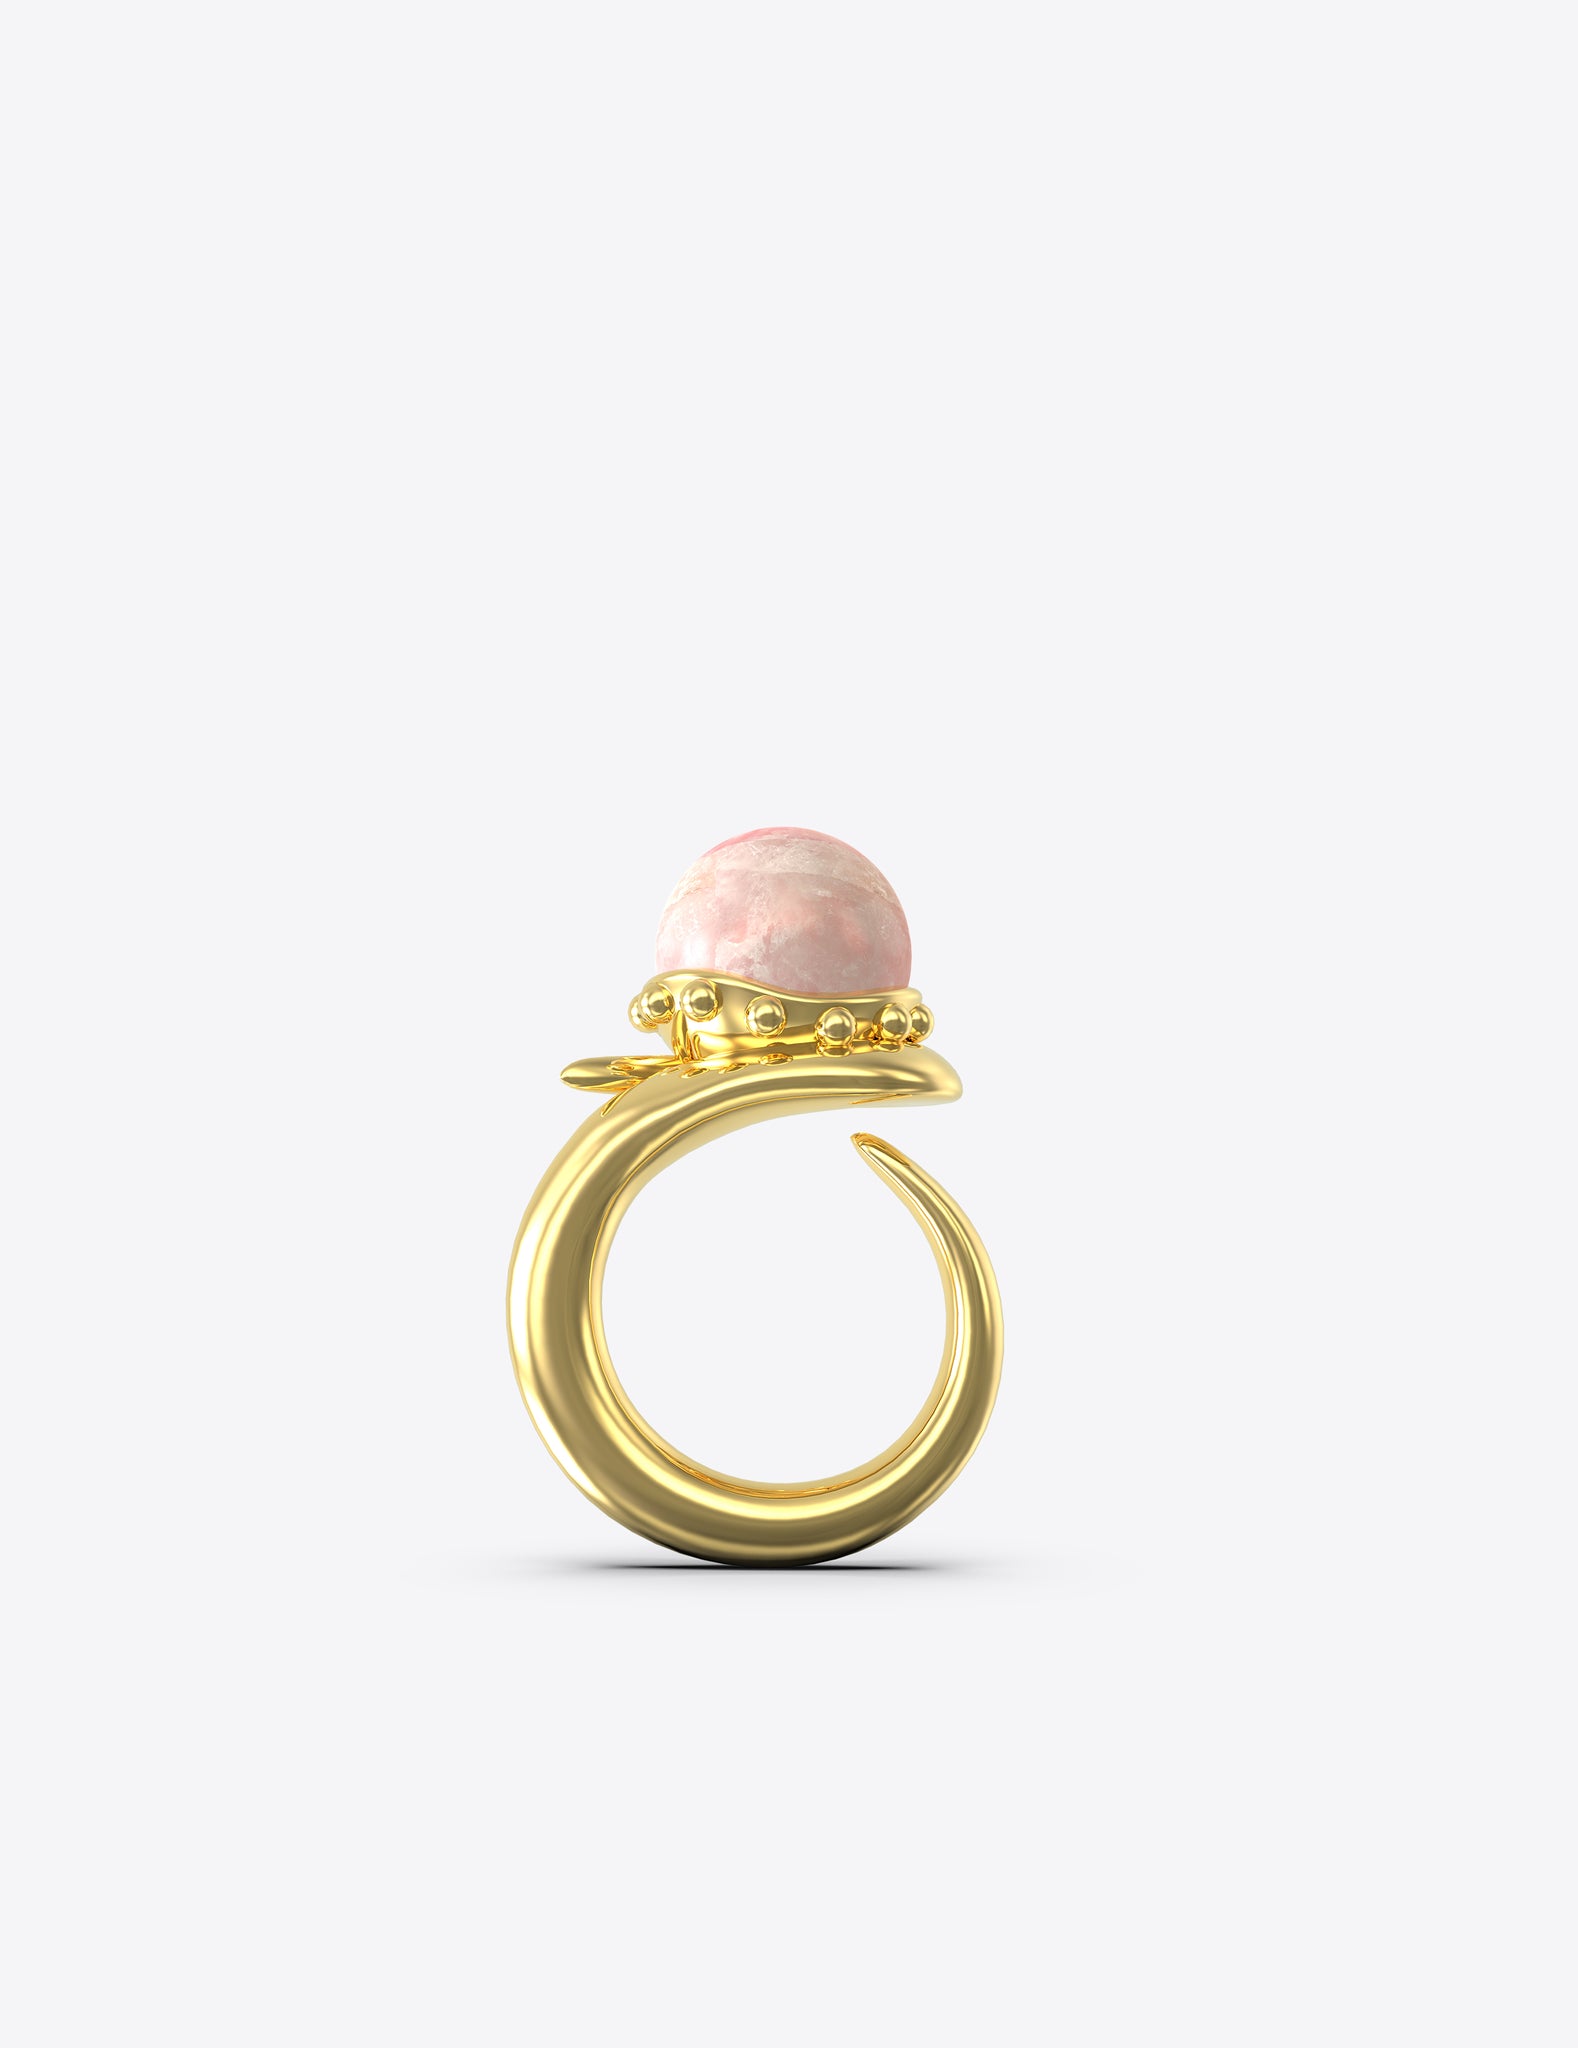 Orb Ring with Rose Quartz